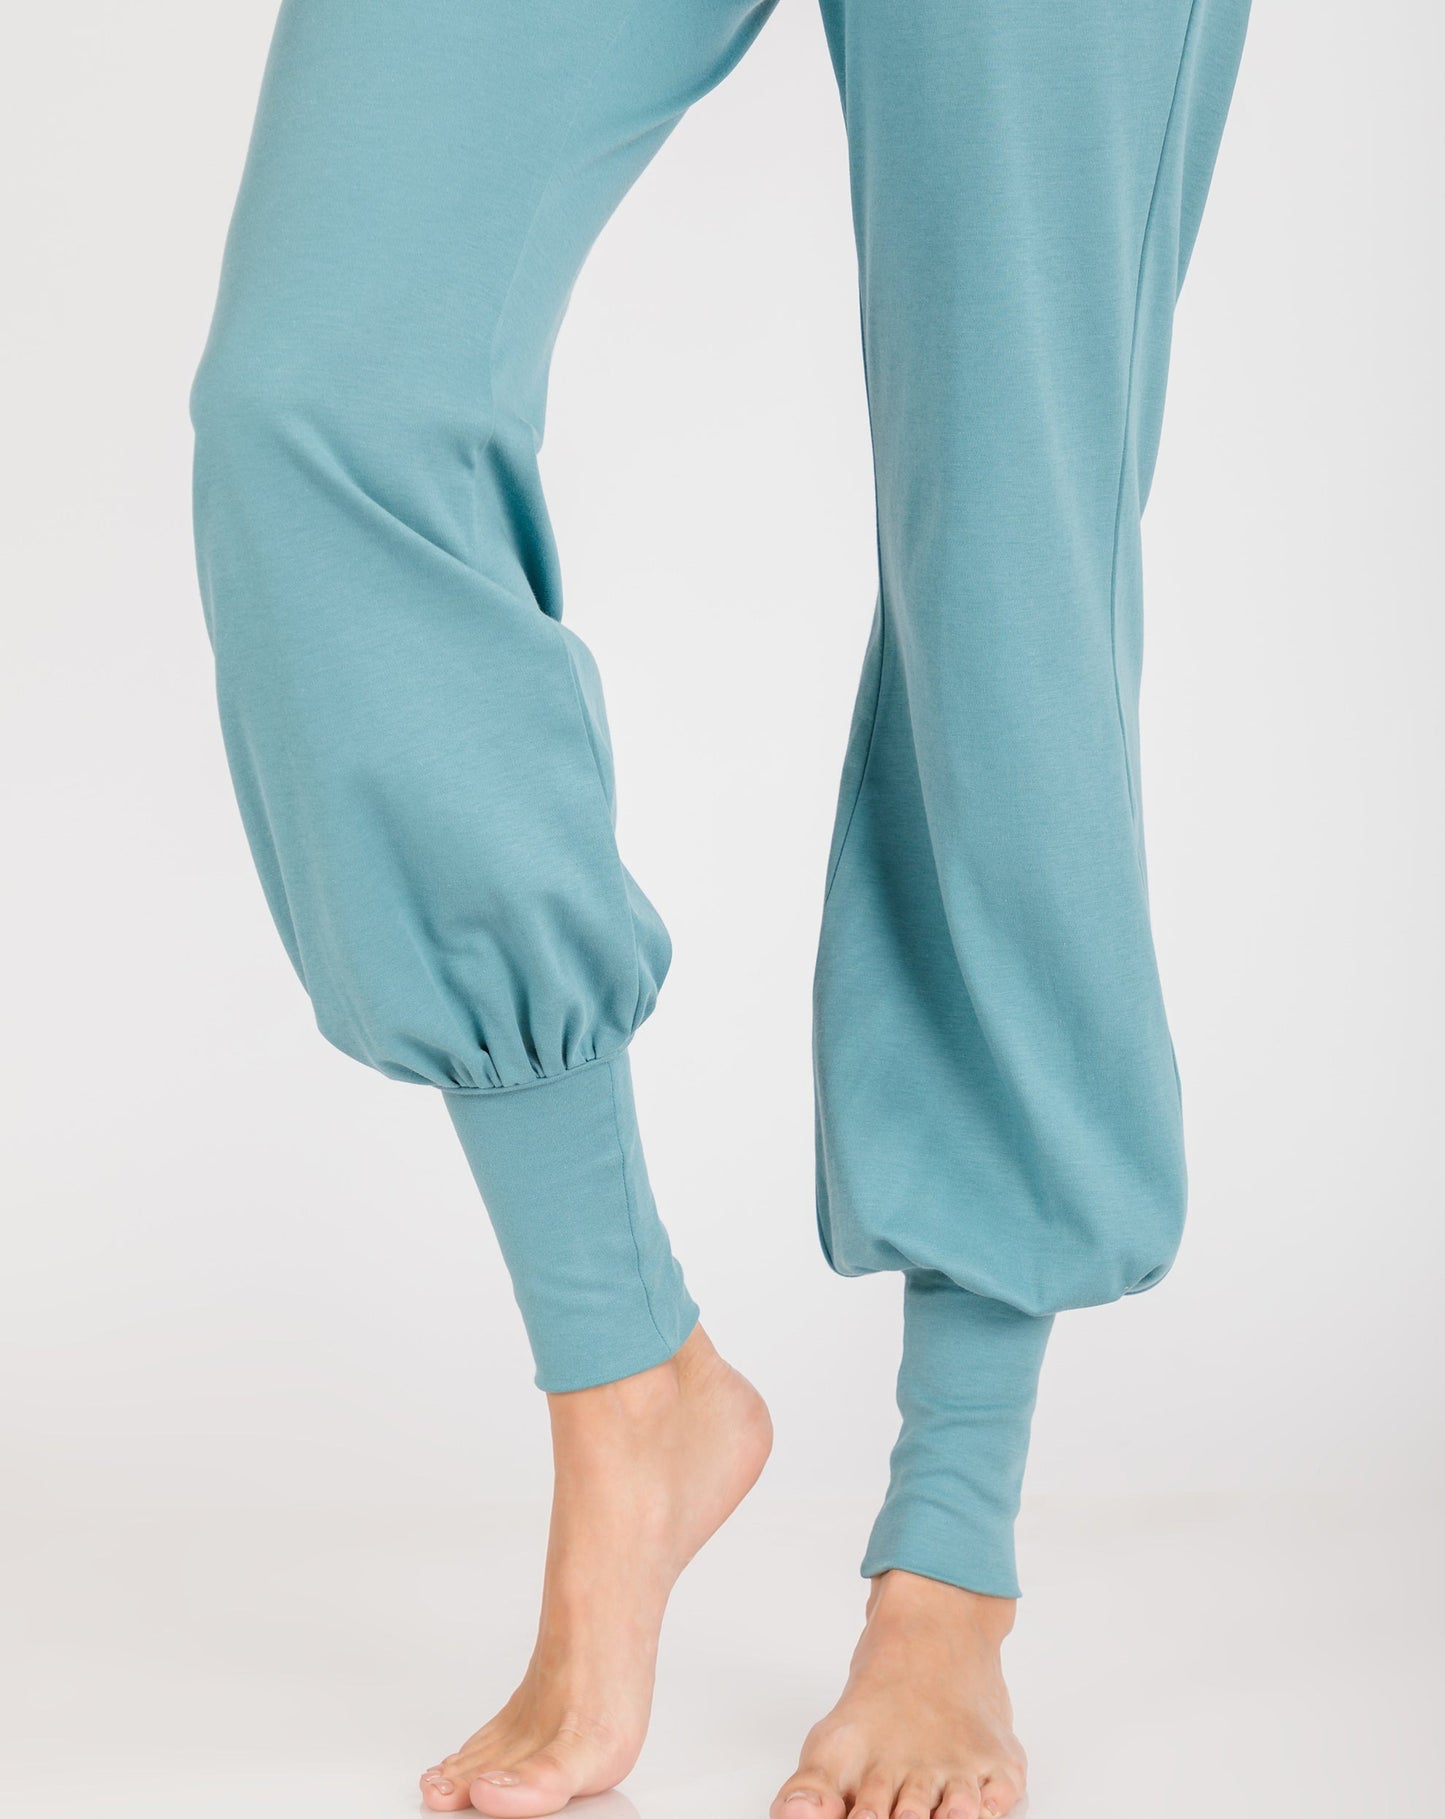 women_s-pajama-set-detail-Sweatpant-storm blue-Lavender-Dreams